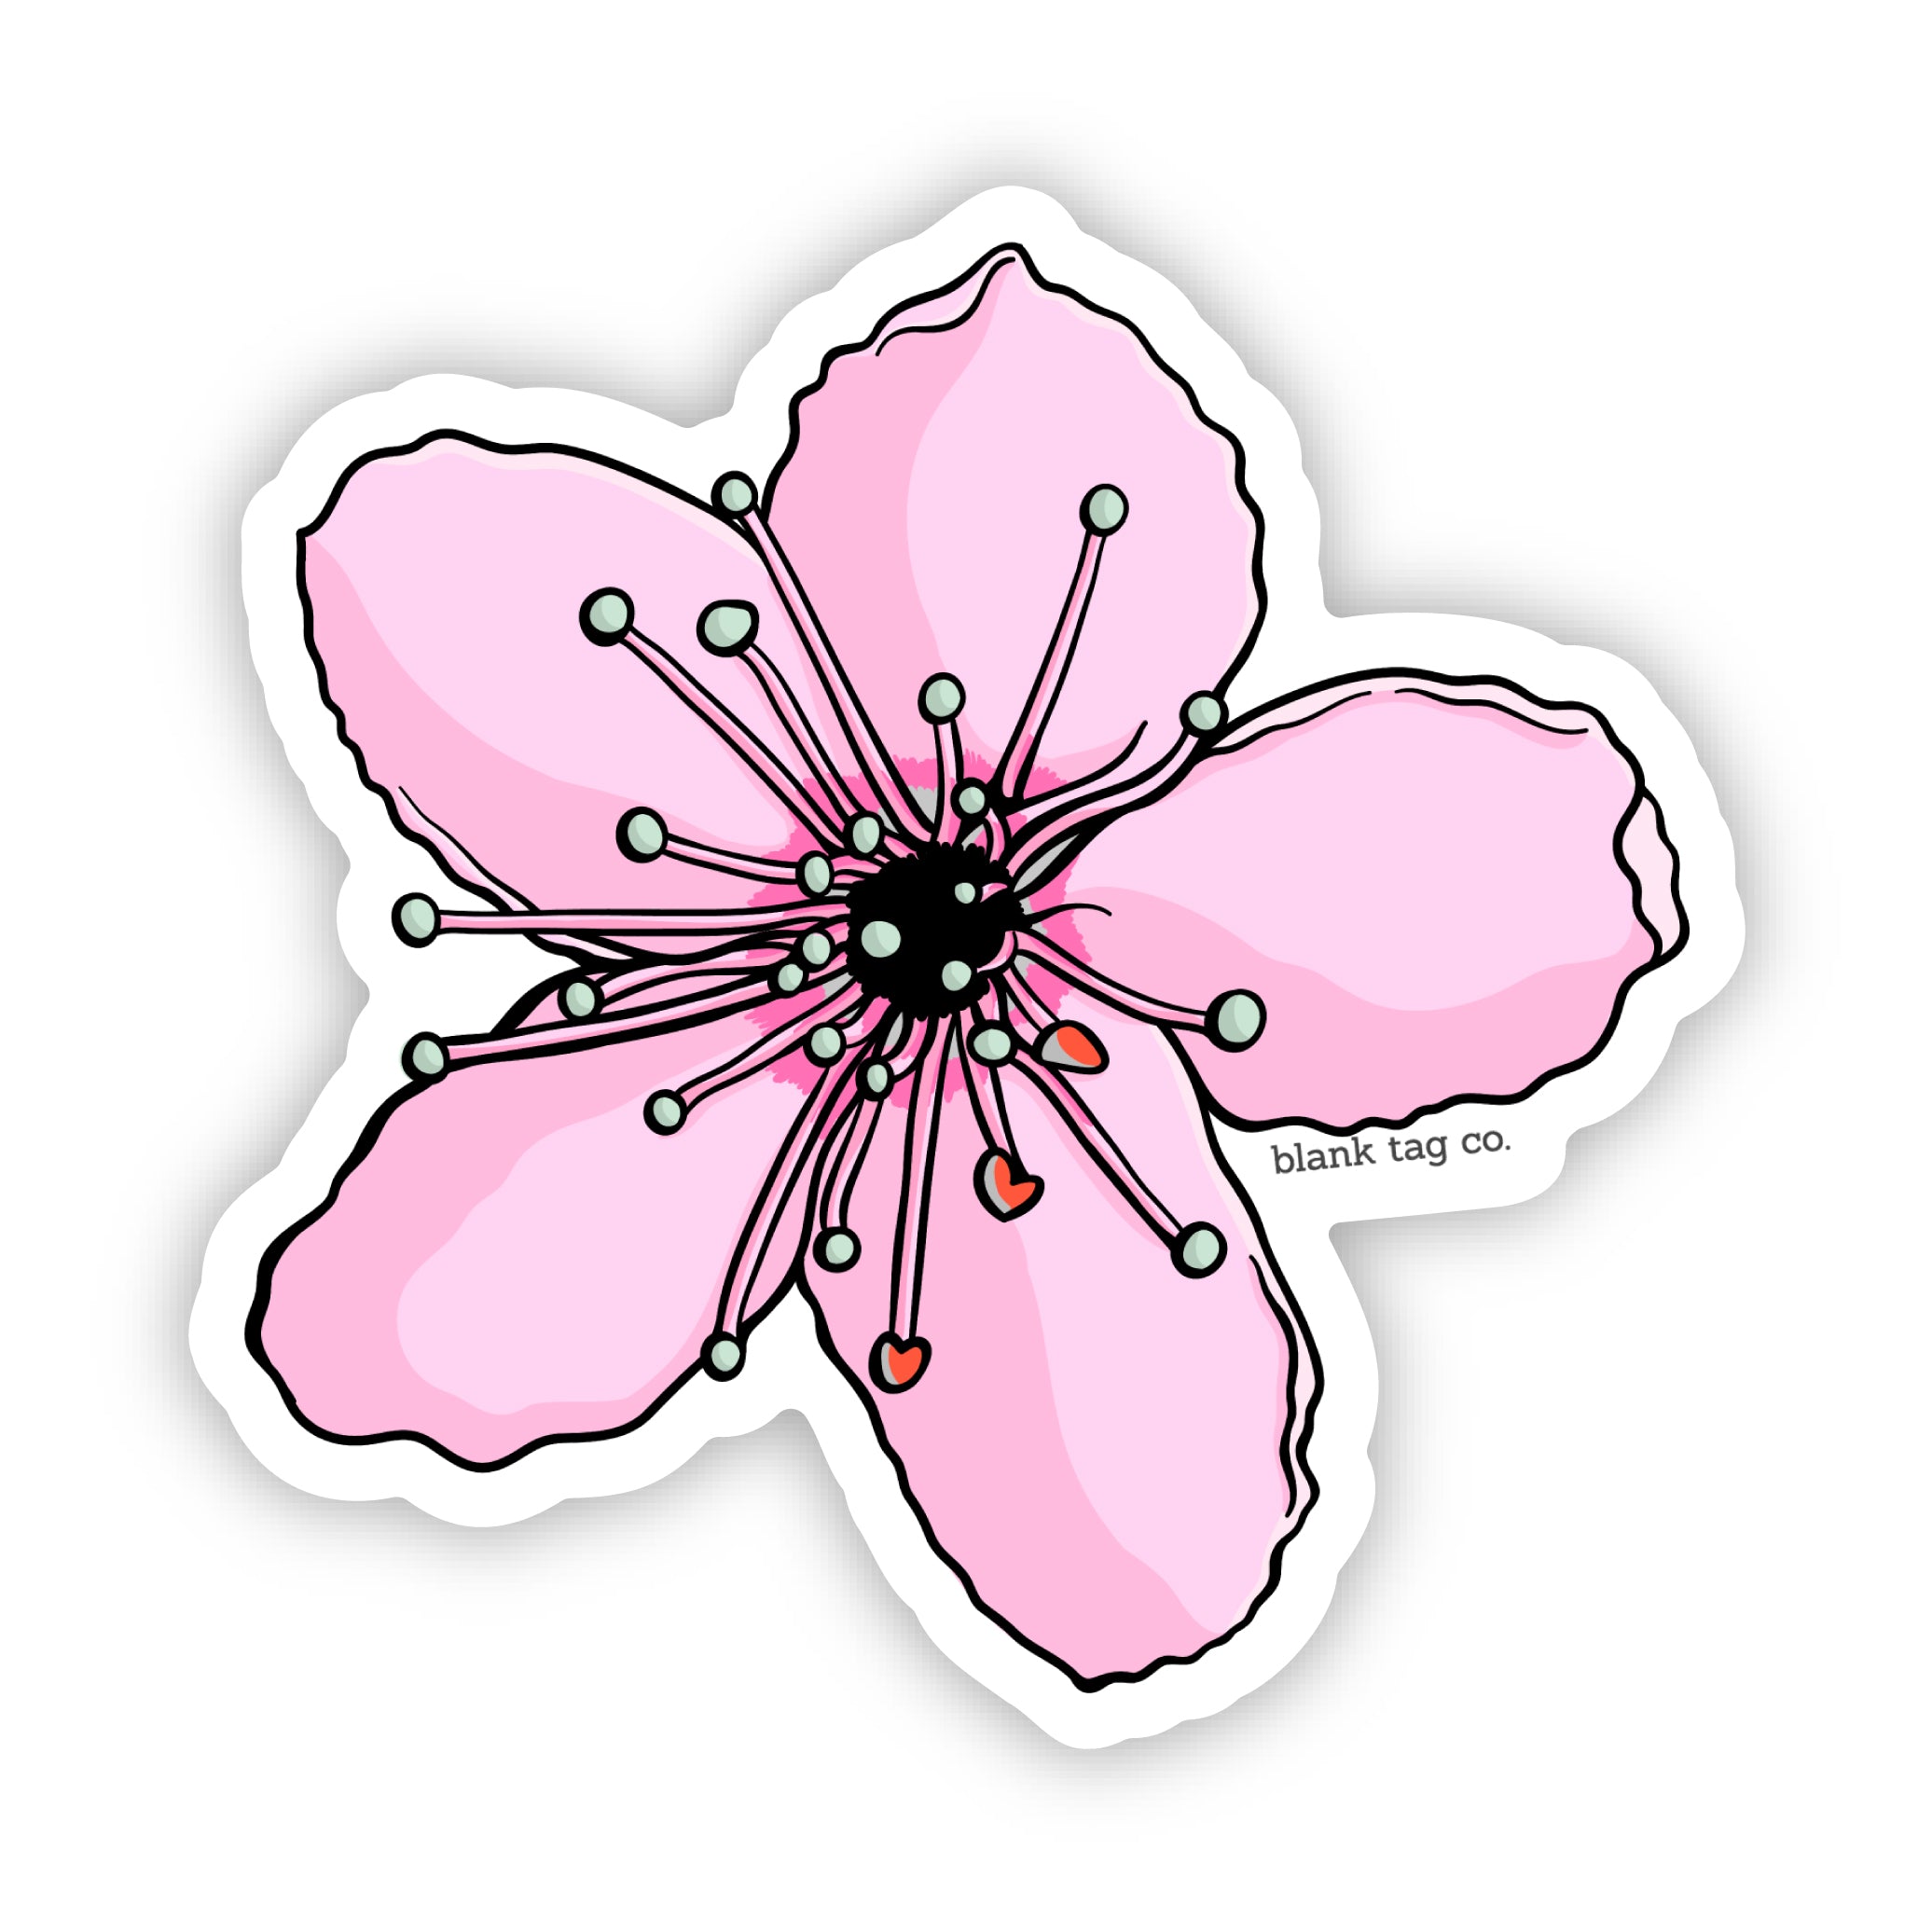 The Cherry Blossom Sticker